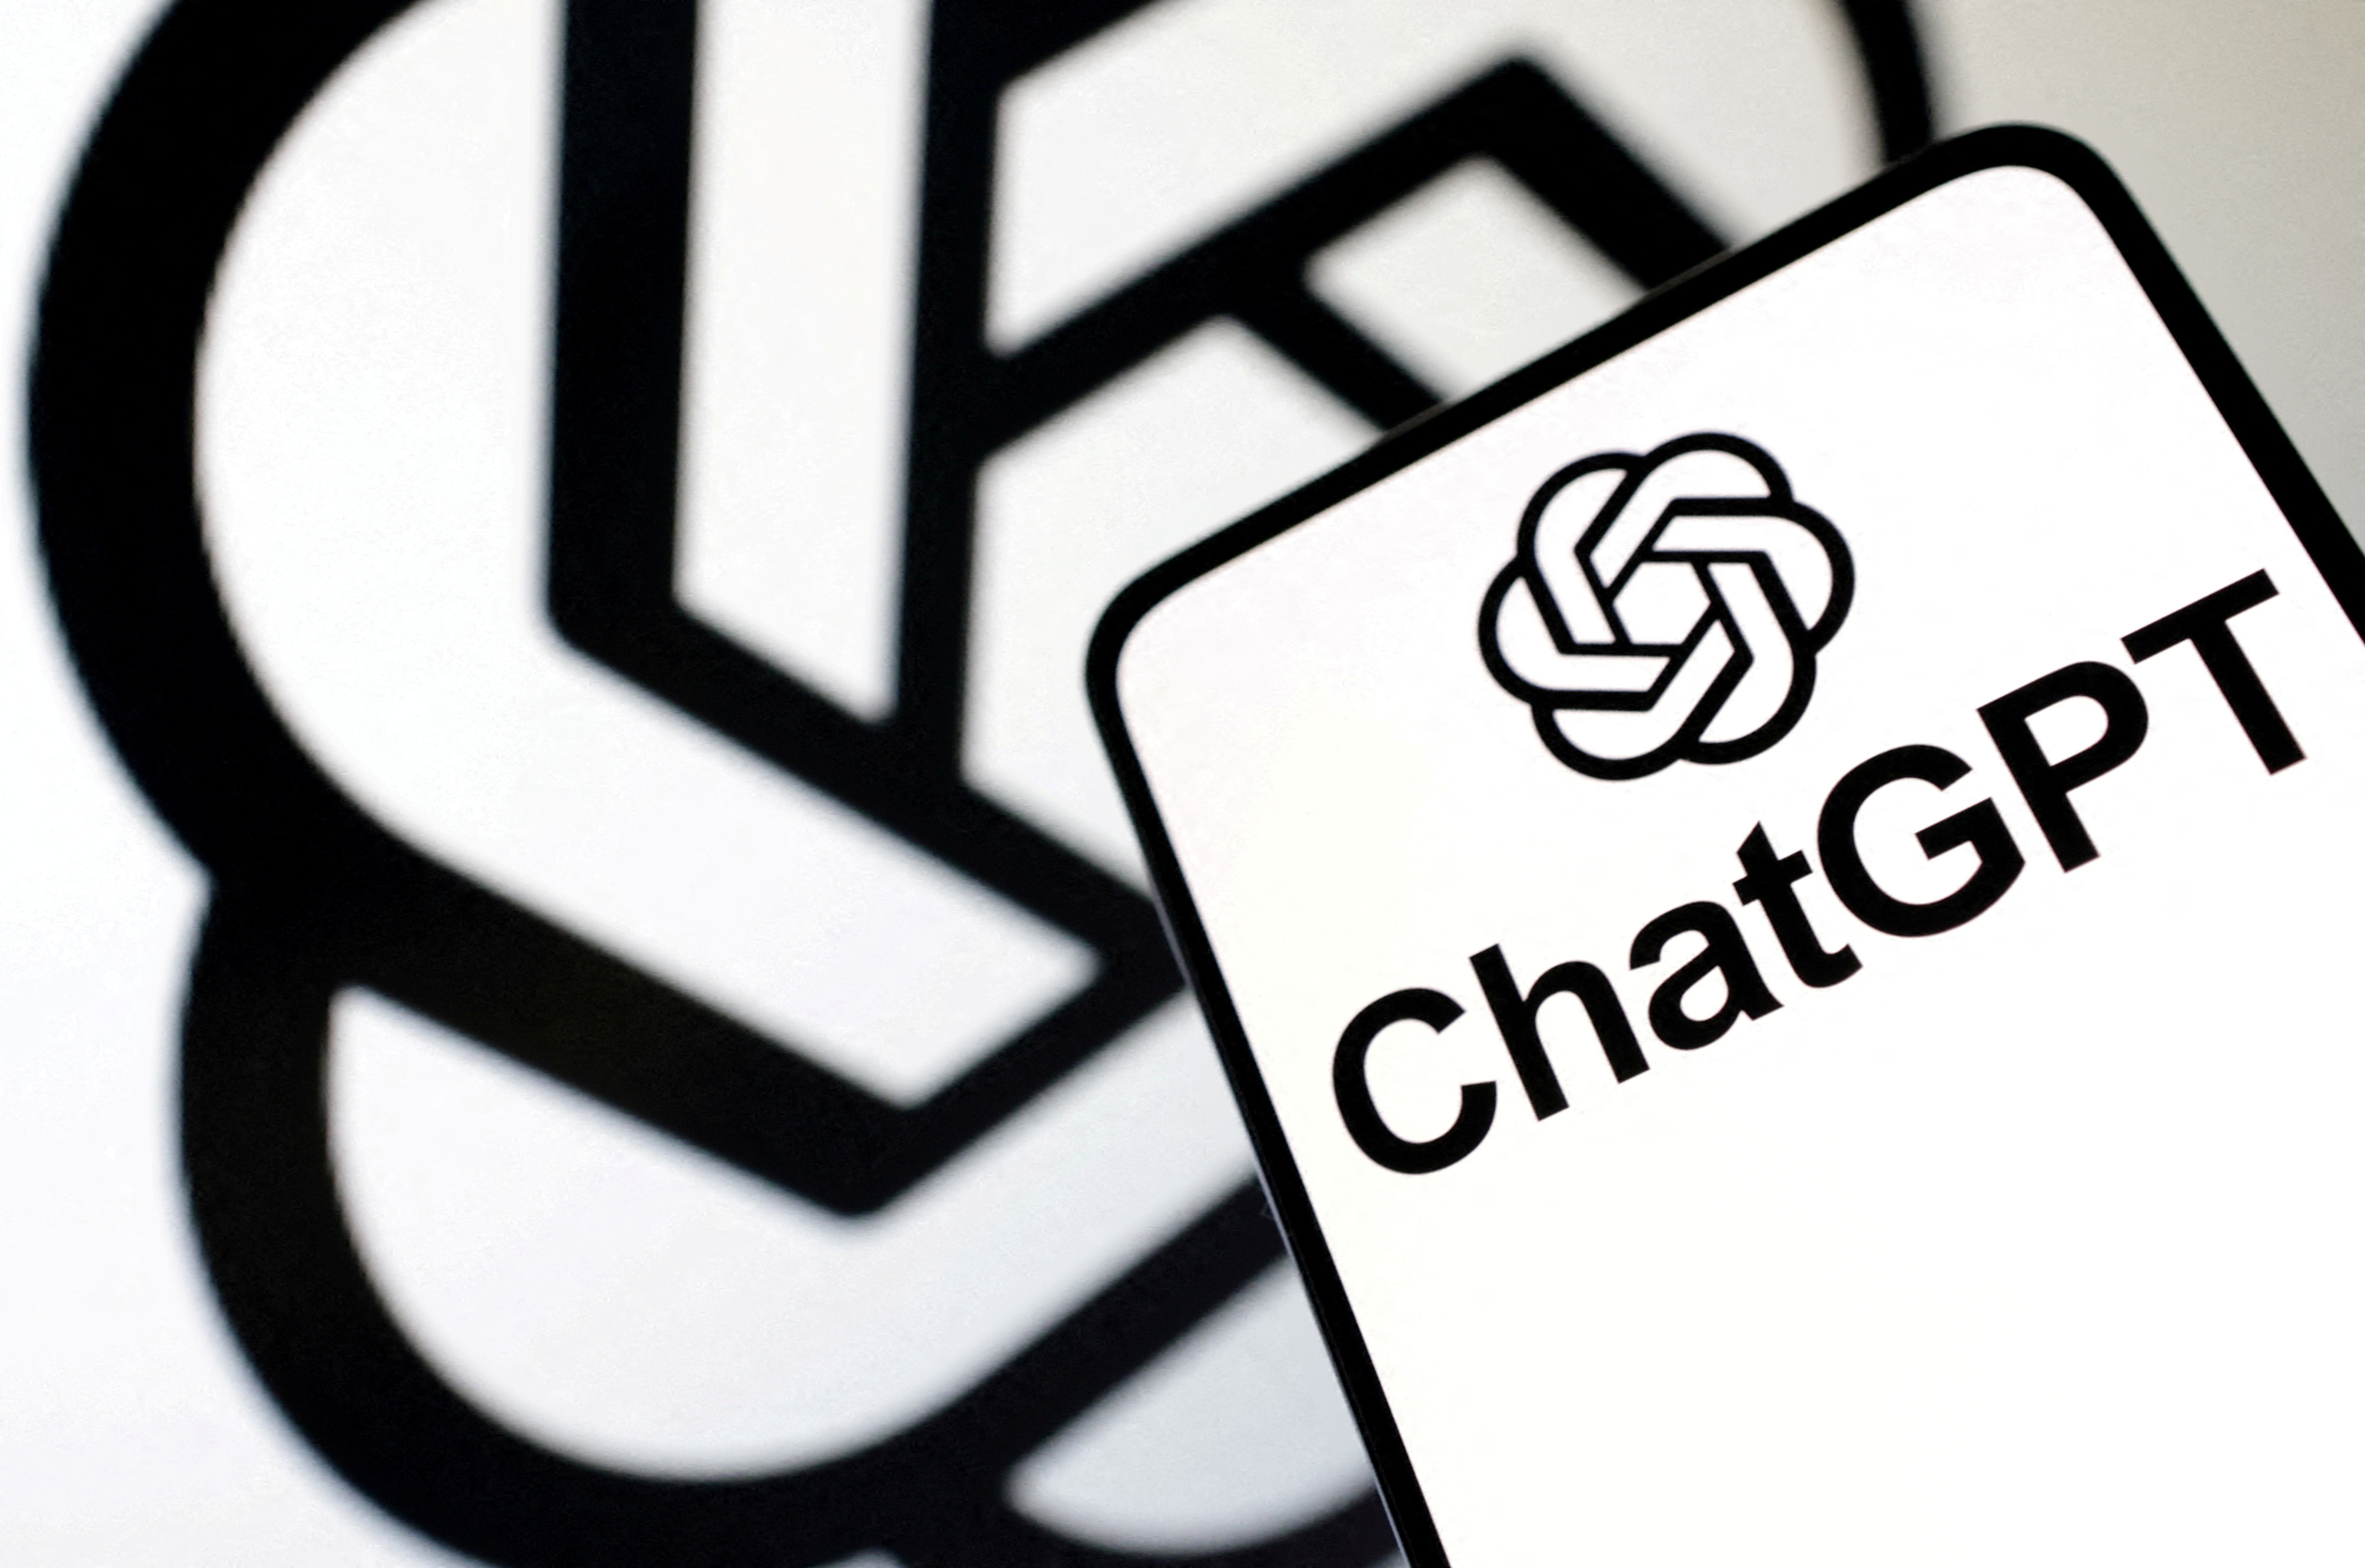 La ilustración muestra el logotipo de ChatGPT